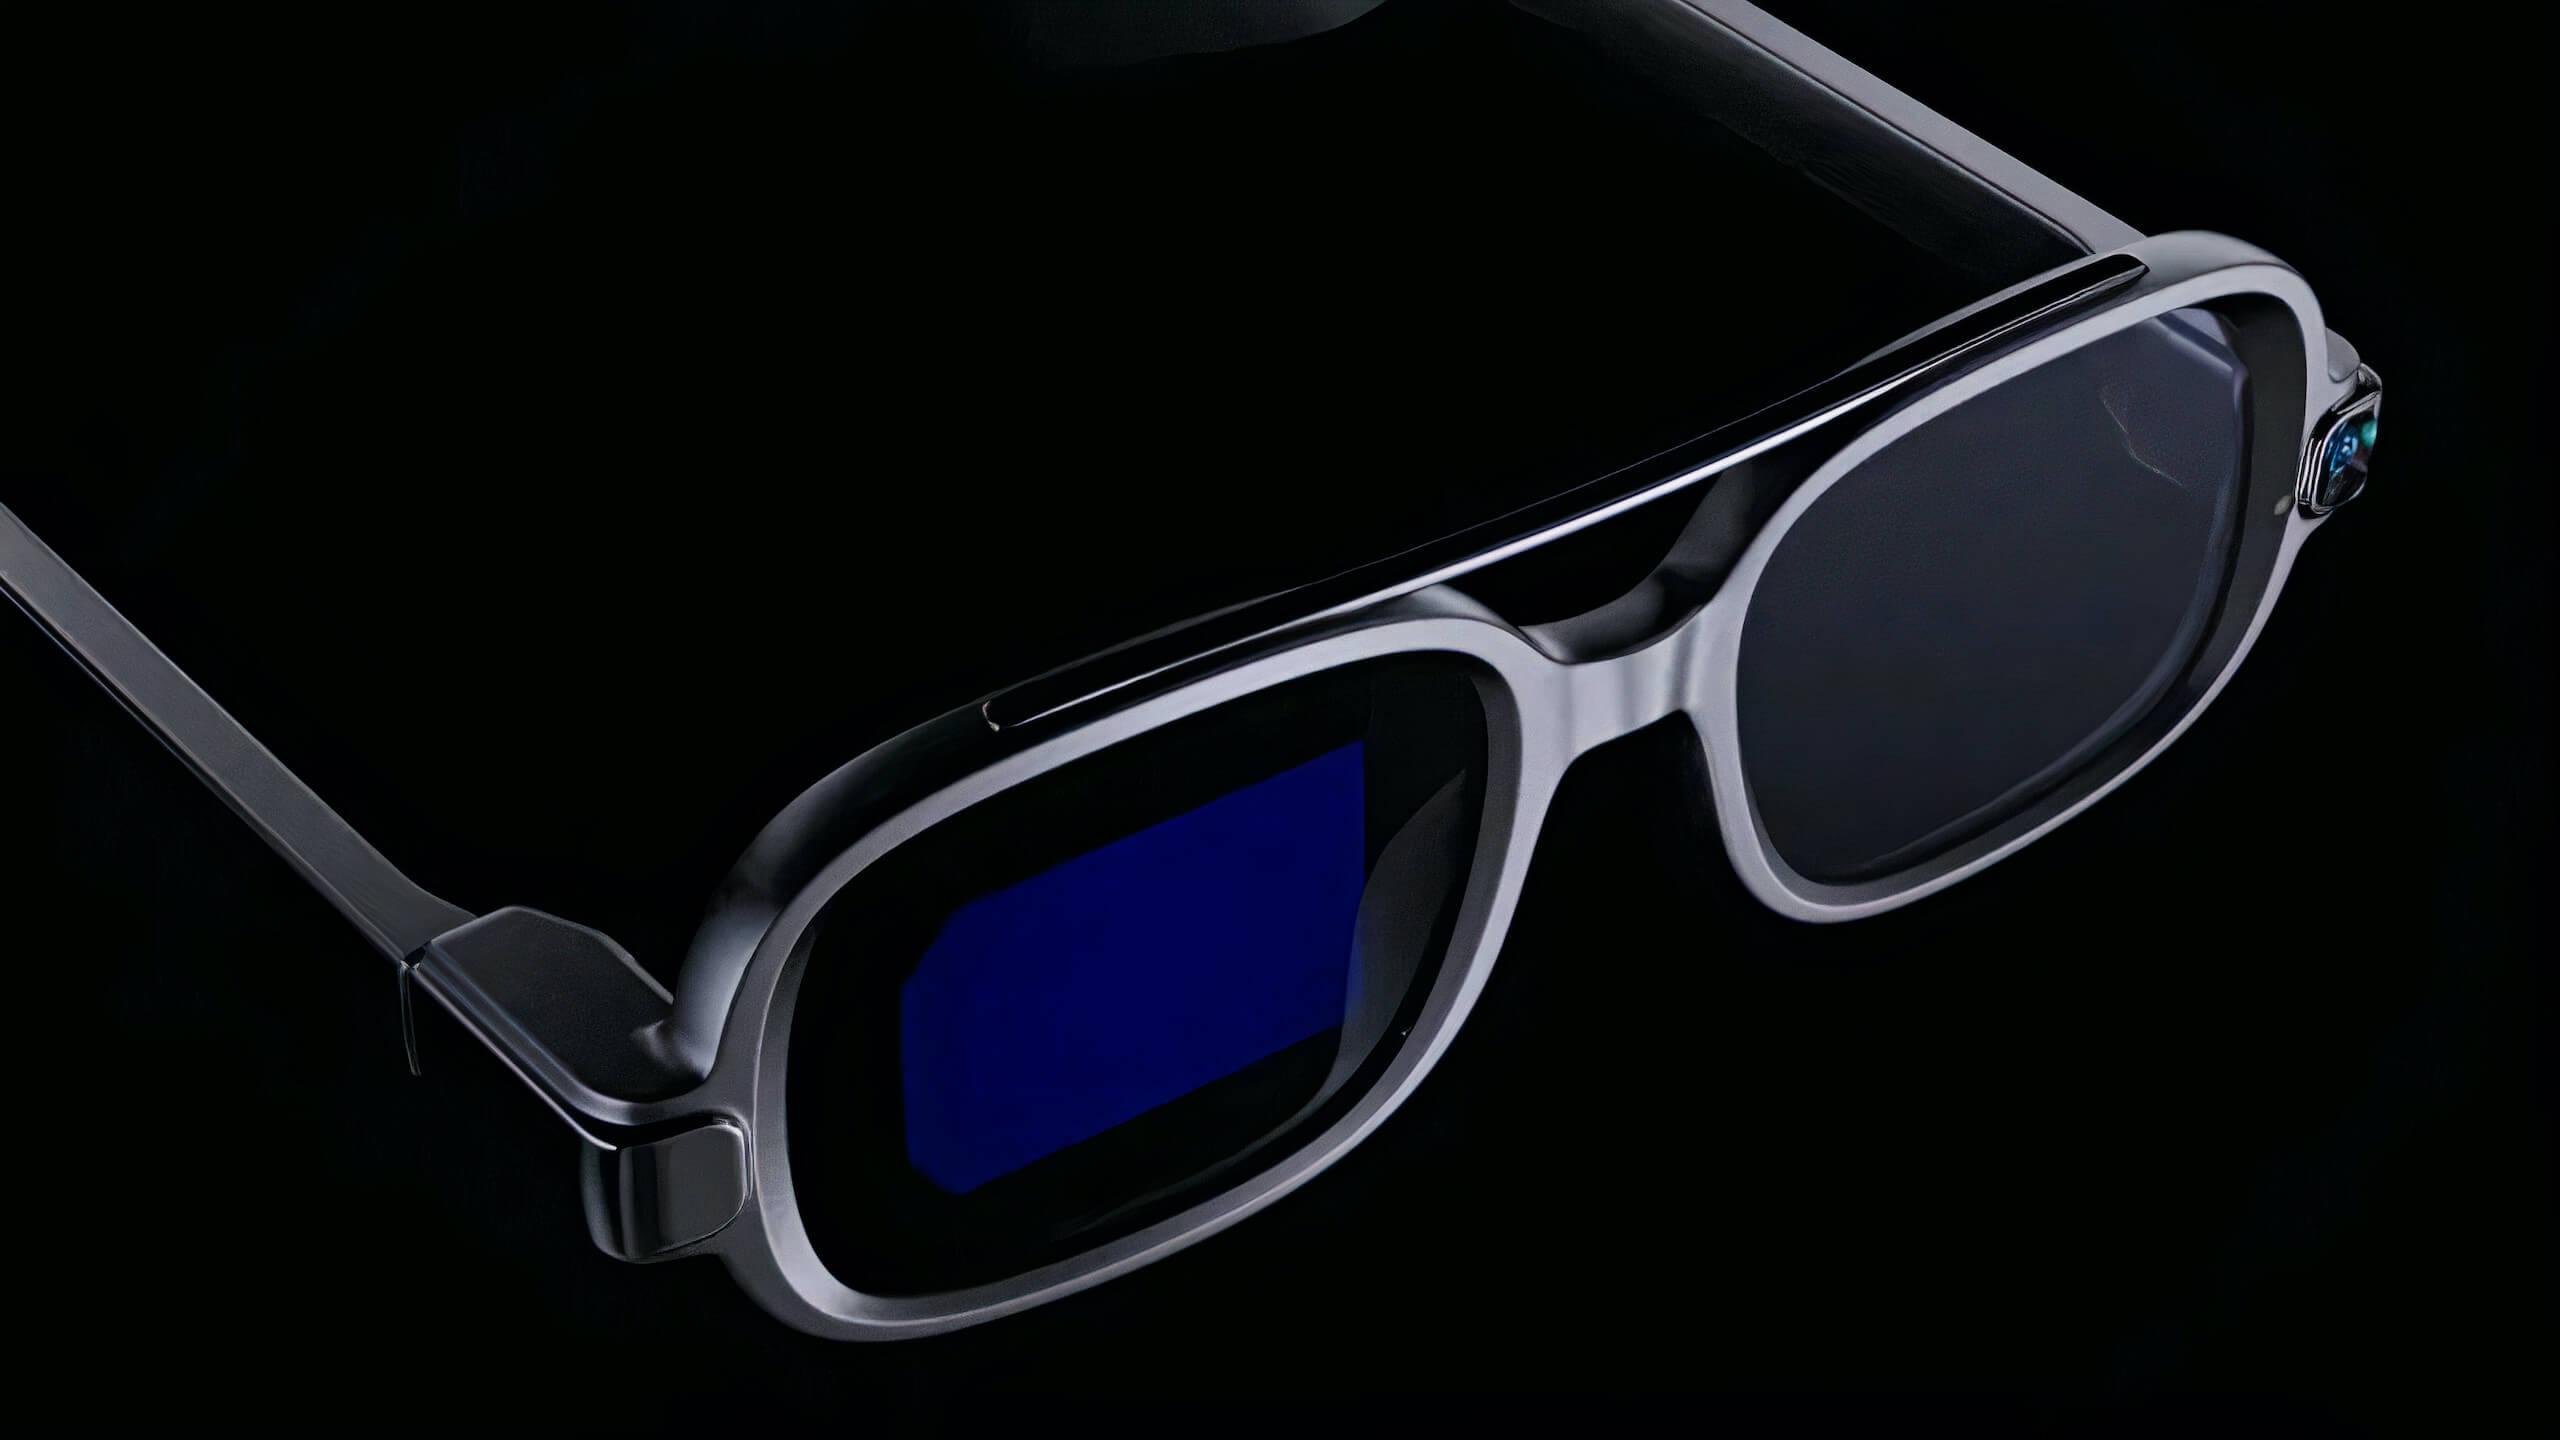 Xiaomi showed a new gadget Smart Glasses